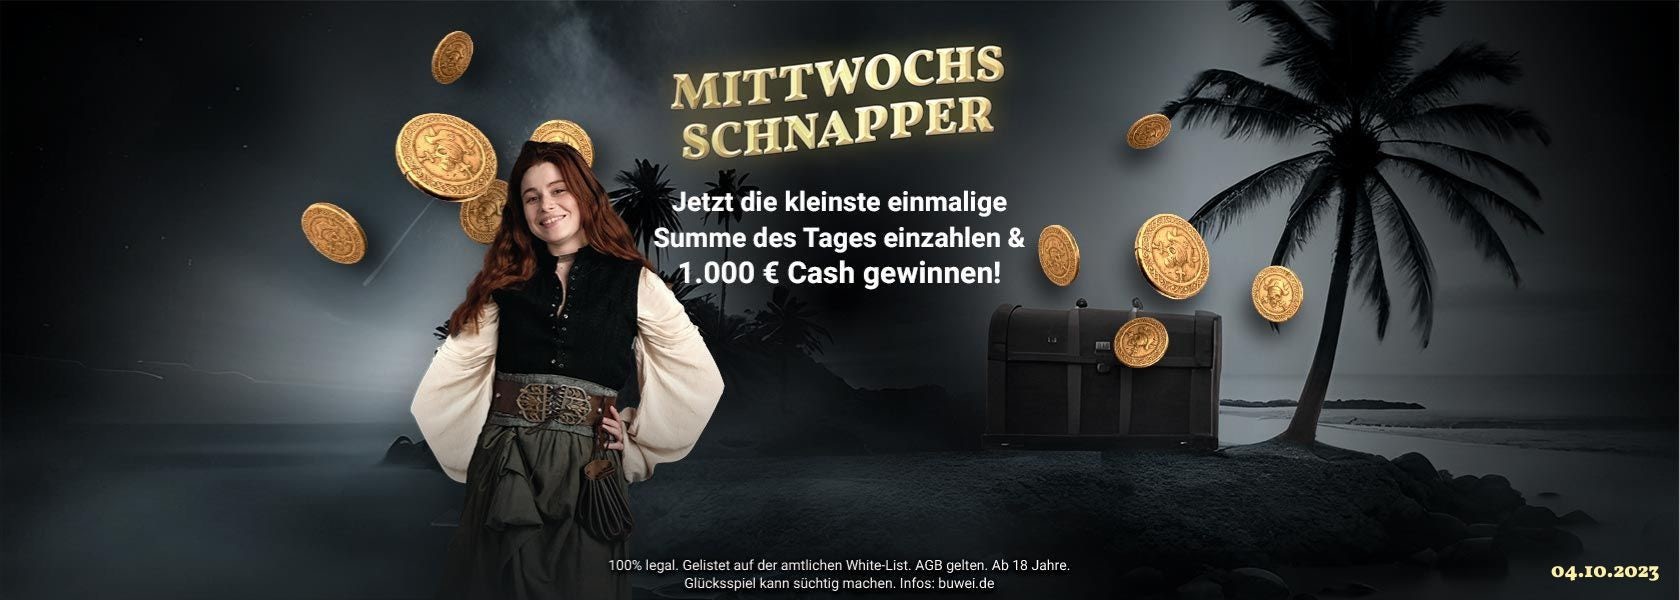 jackpotpiraten-mittwochs-schnapper-041023